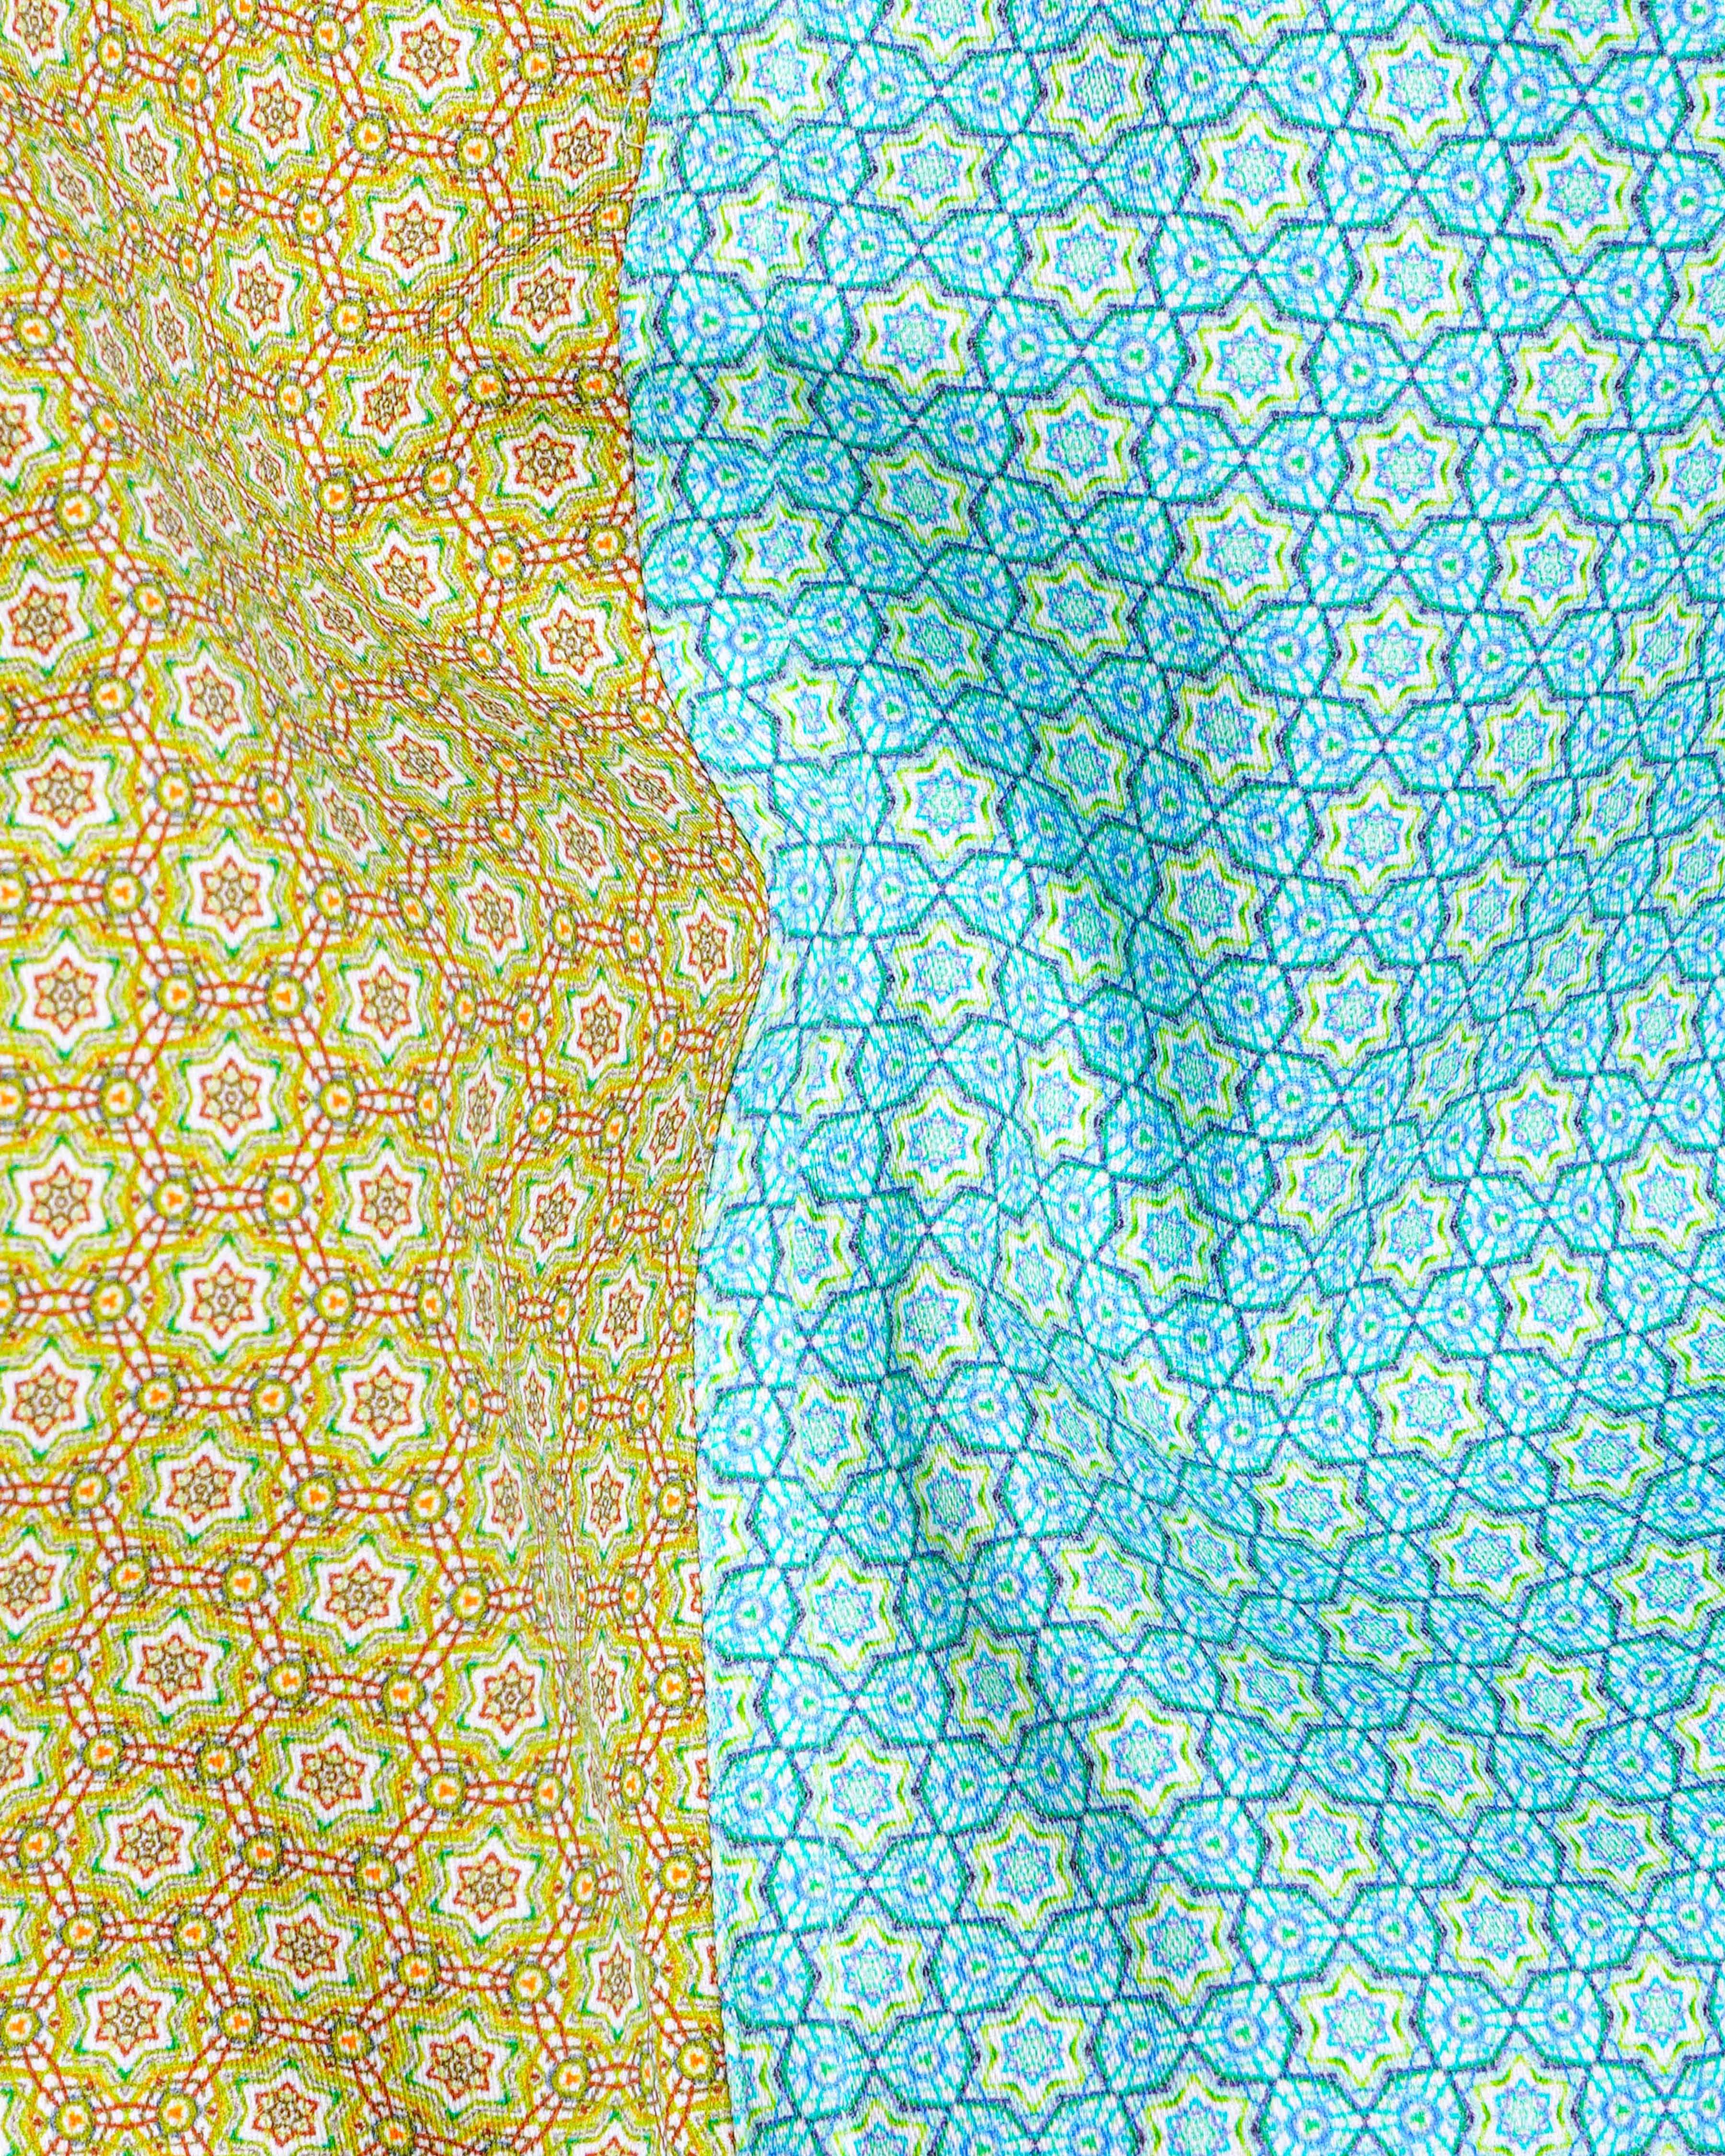 Murky Green and Downy Blue Super Soft Premium Cotton Designer Shirt 8303-D22 -38,8303-D22 -H-38,8303-D22 -39,8303-D22 -H-39,8303-D22 -40,8303-D22 -H-40,8303-D22 -42,8303-D22 -H-42,8303-D22 -44,8303-D22 -H-44,8303-D22 -46,8303-D22 -H-46,8303-D22 -48,8303-D22 -H-48,8303-D22 -50,8303-D22 -H-50,8303-D22 -52,8303-D22 -H-52